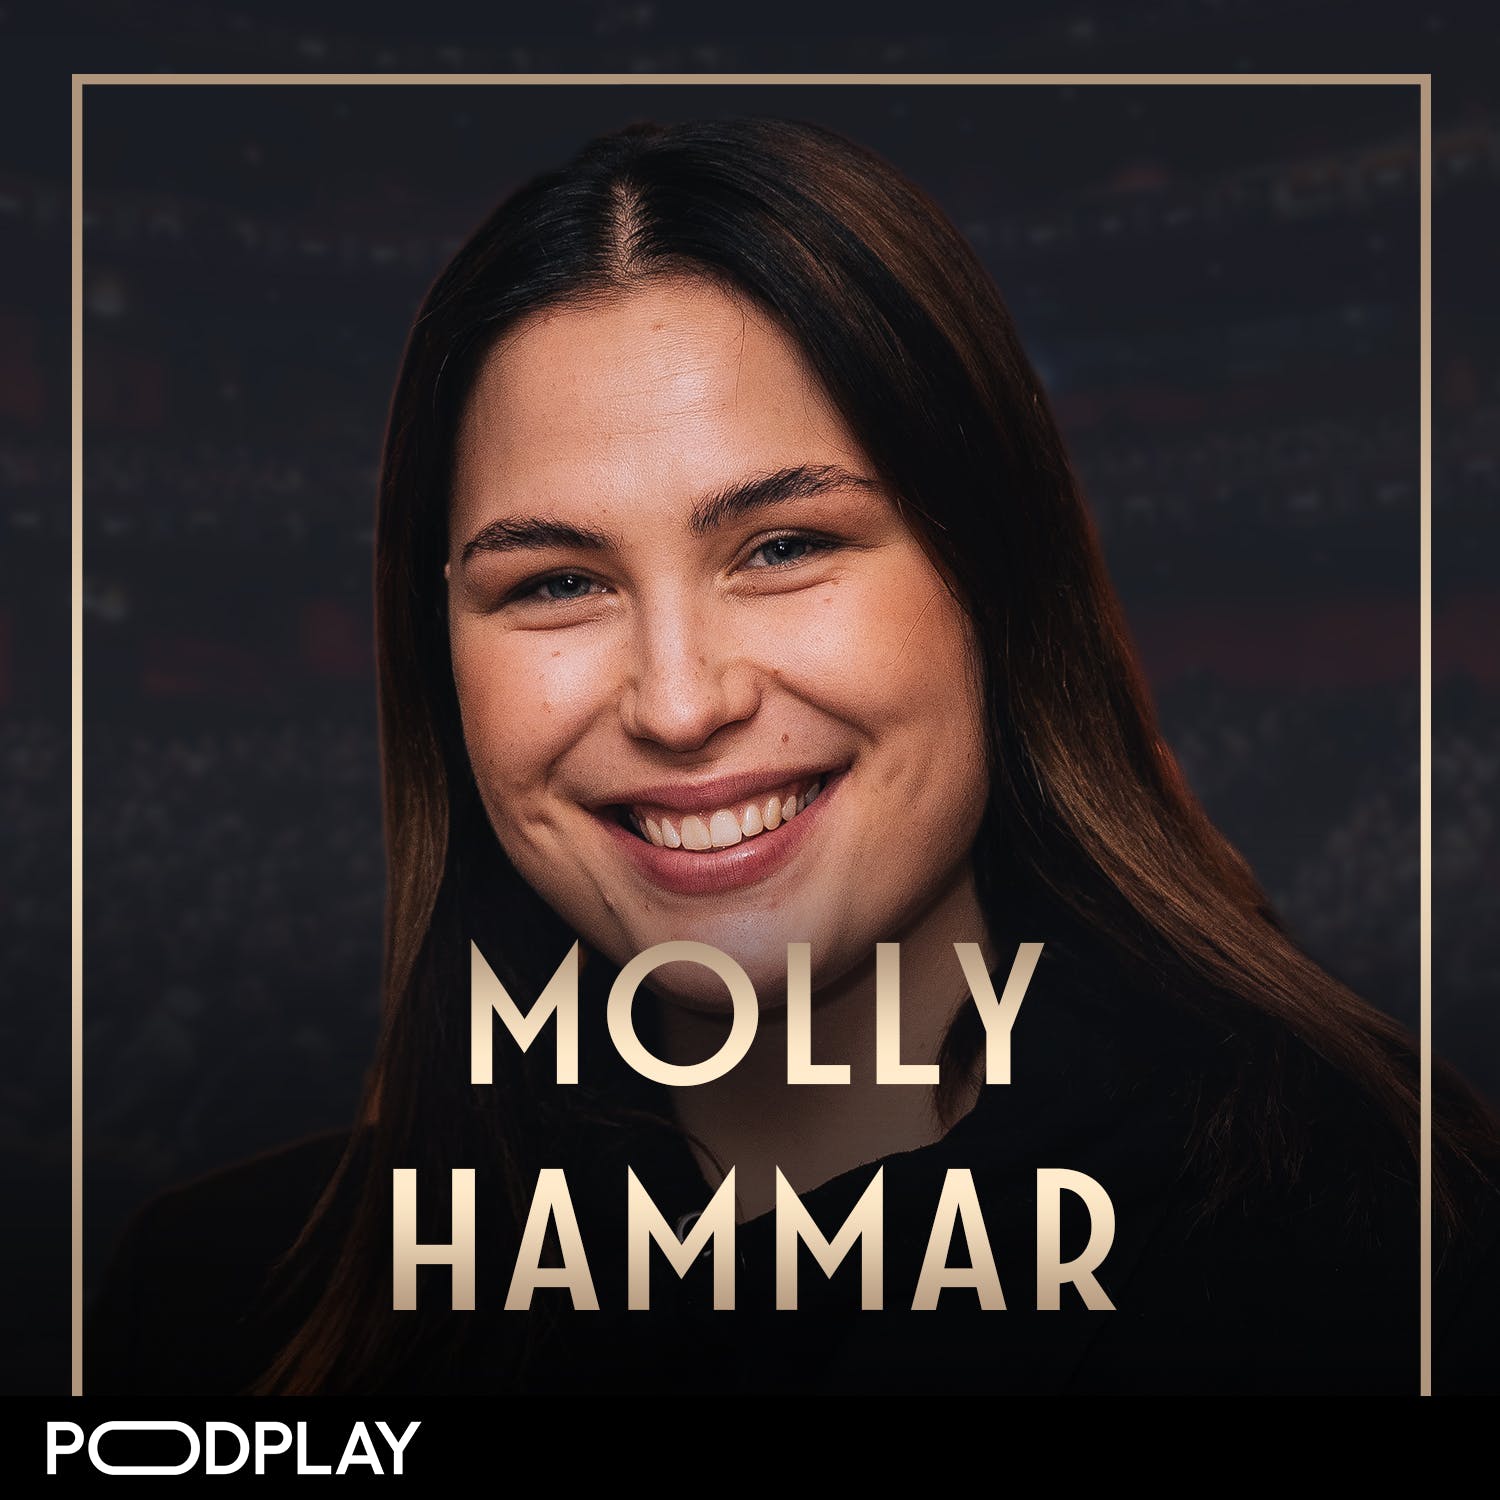 401. Molly Hammar - Våga vara bäst!, Short